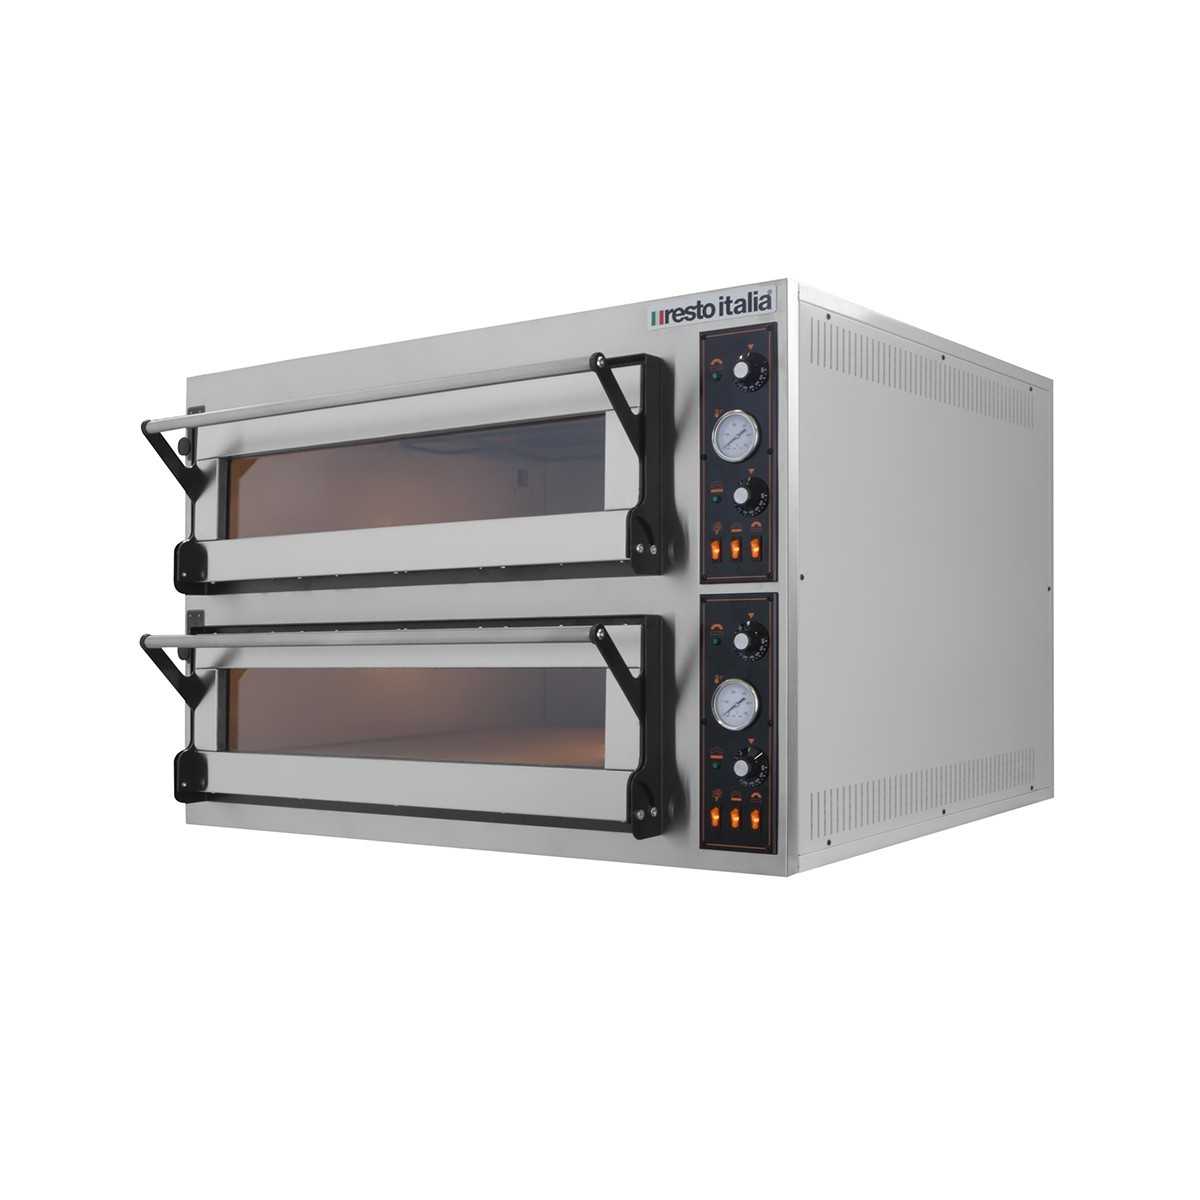 Cella di lievitazione elettrica per forni pane/pizza 6 teglie 60x40 per  forni 6 pizze - Pronto ristorazione